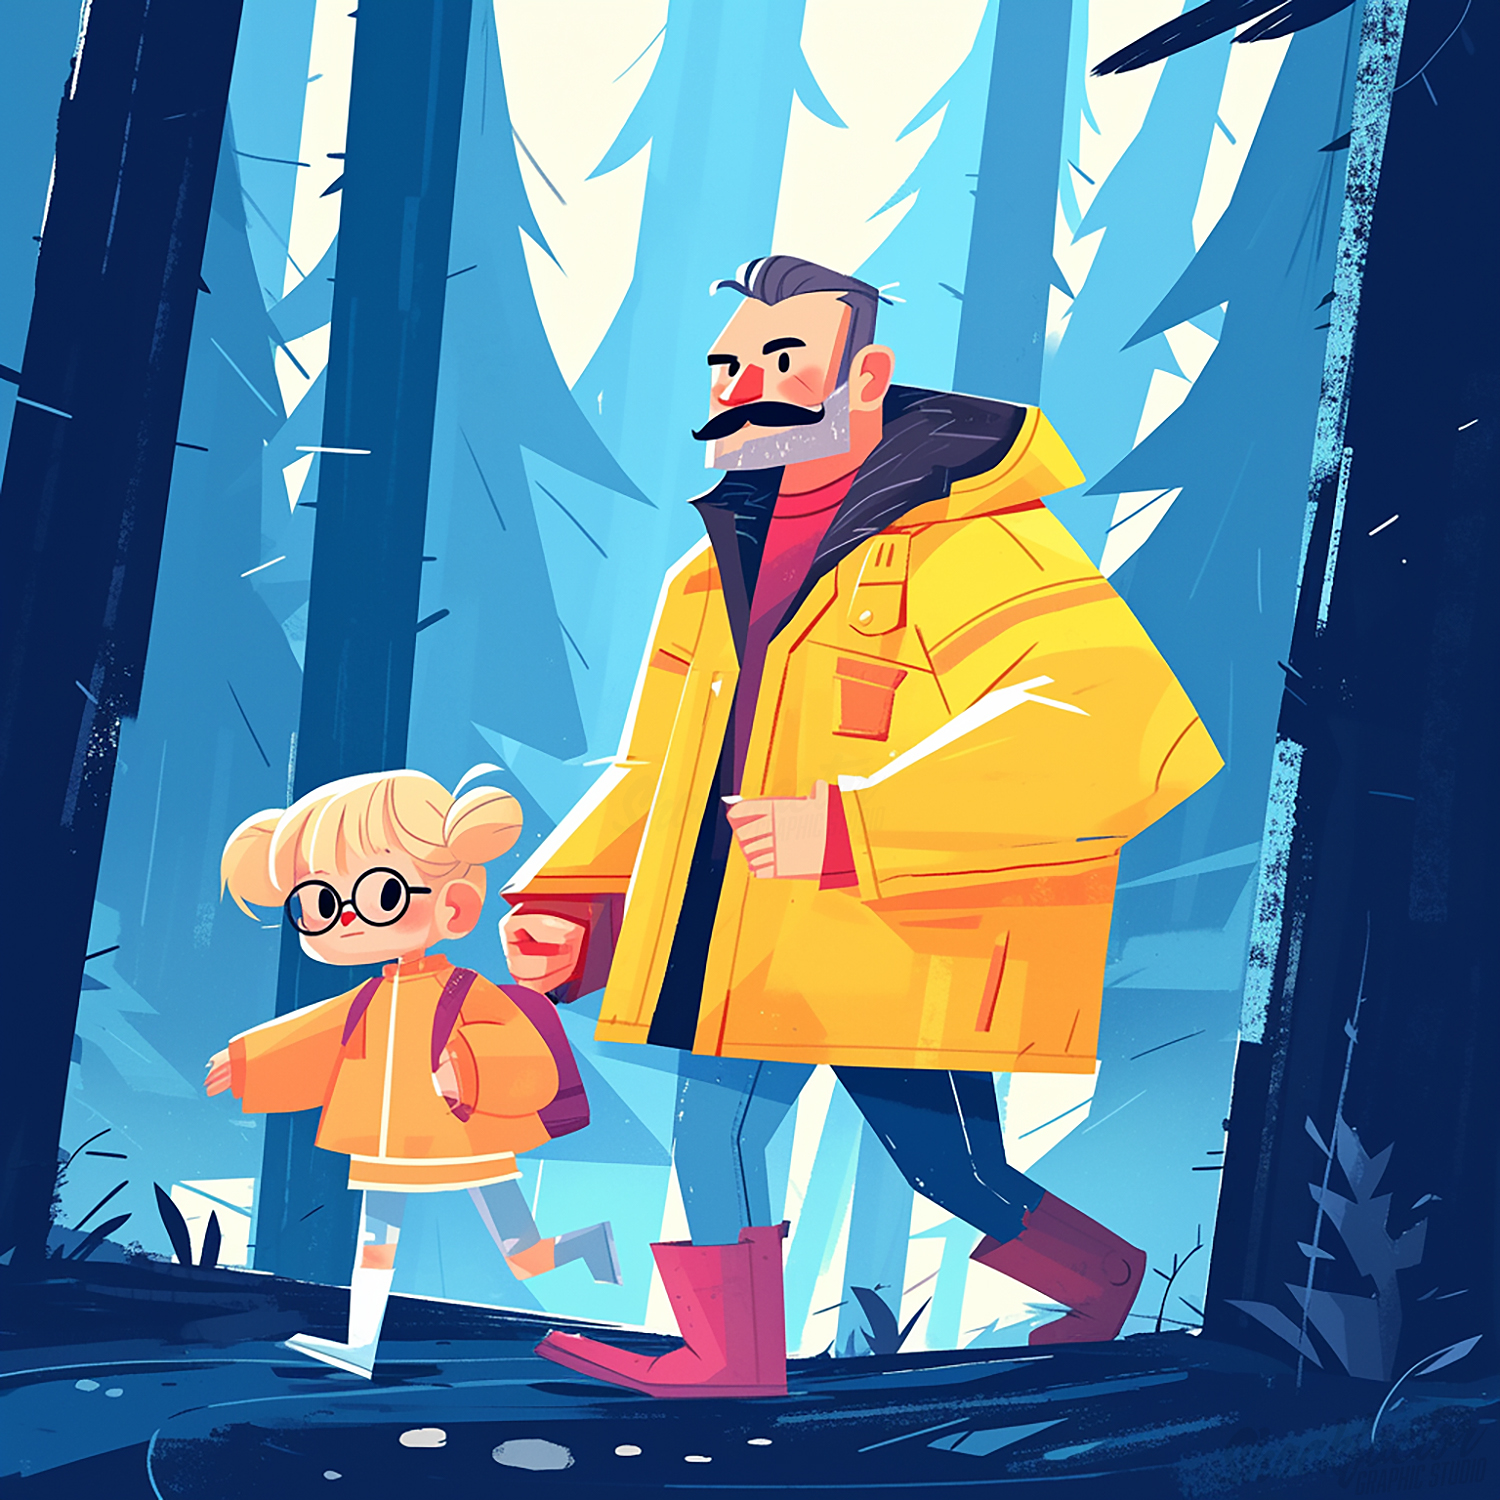 Abenteuer im Wald